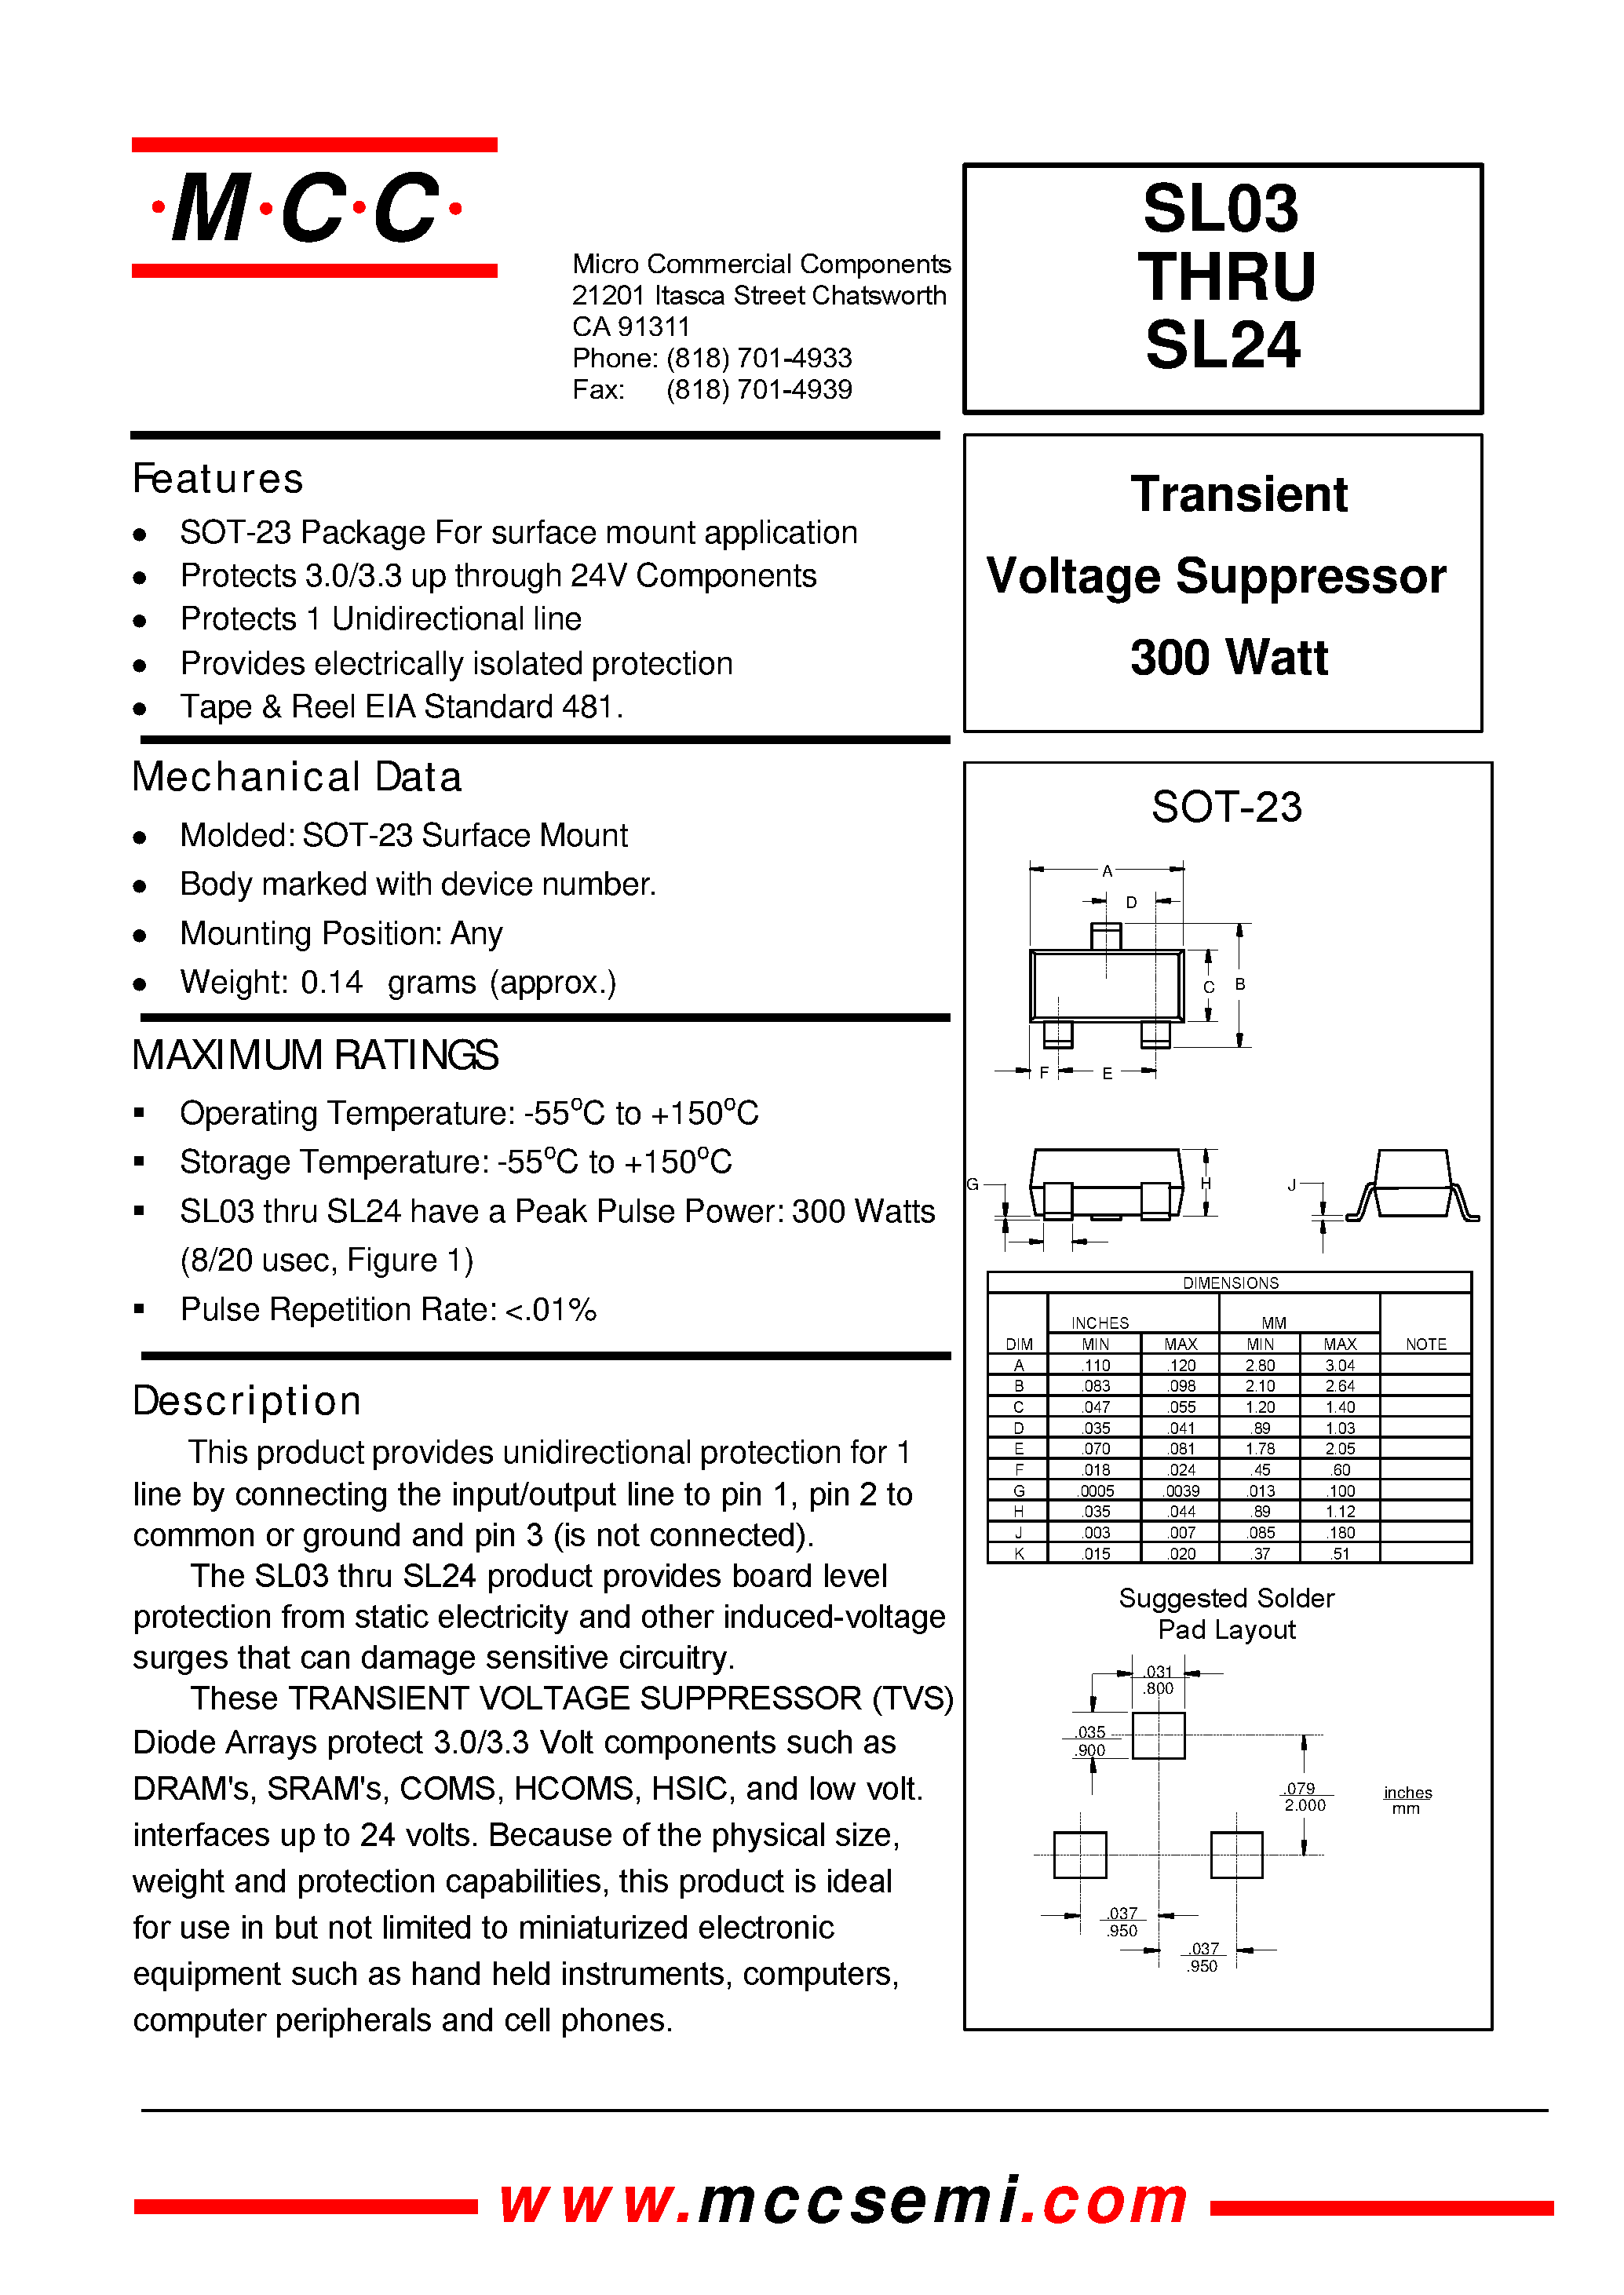 Datasheet SL15 - Transient Voltage Suppressor 300 Watt page 1